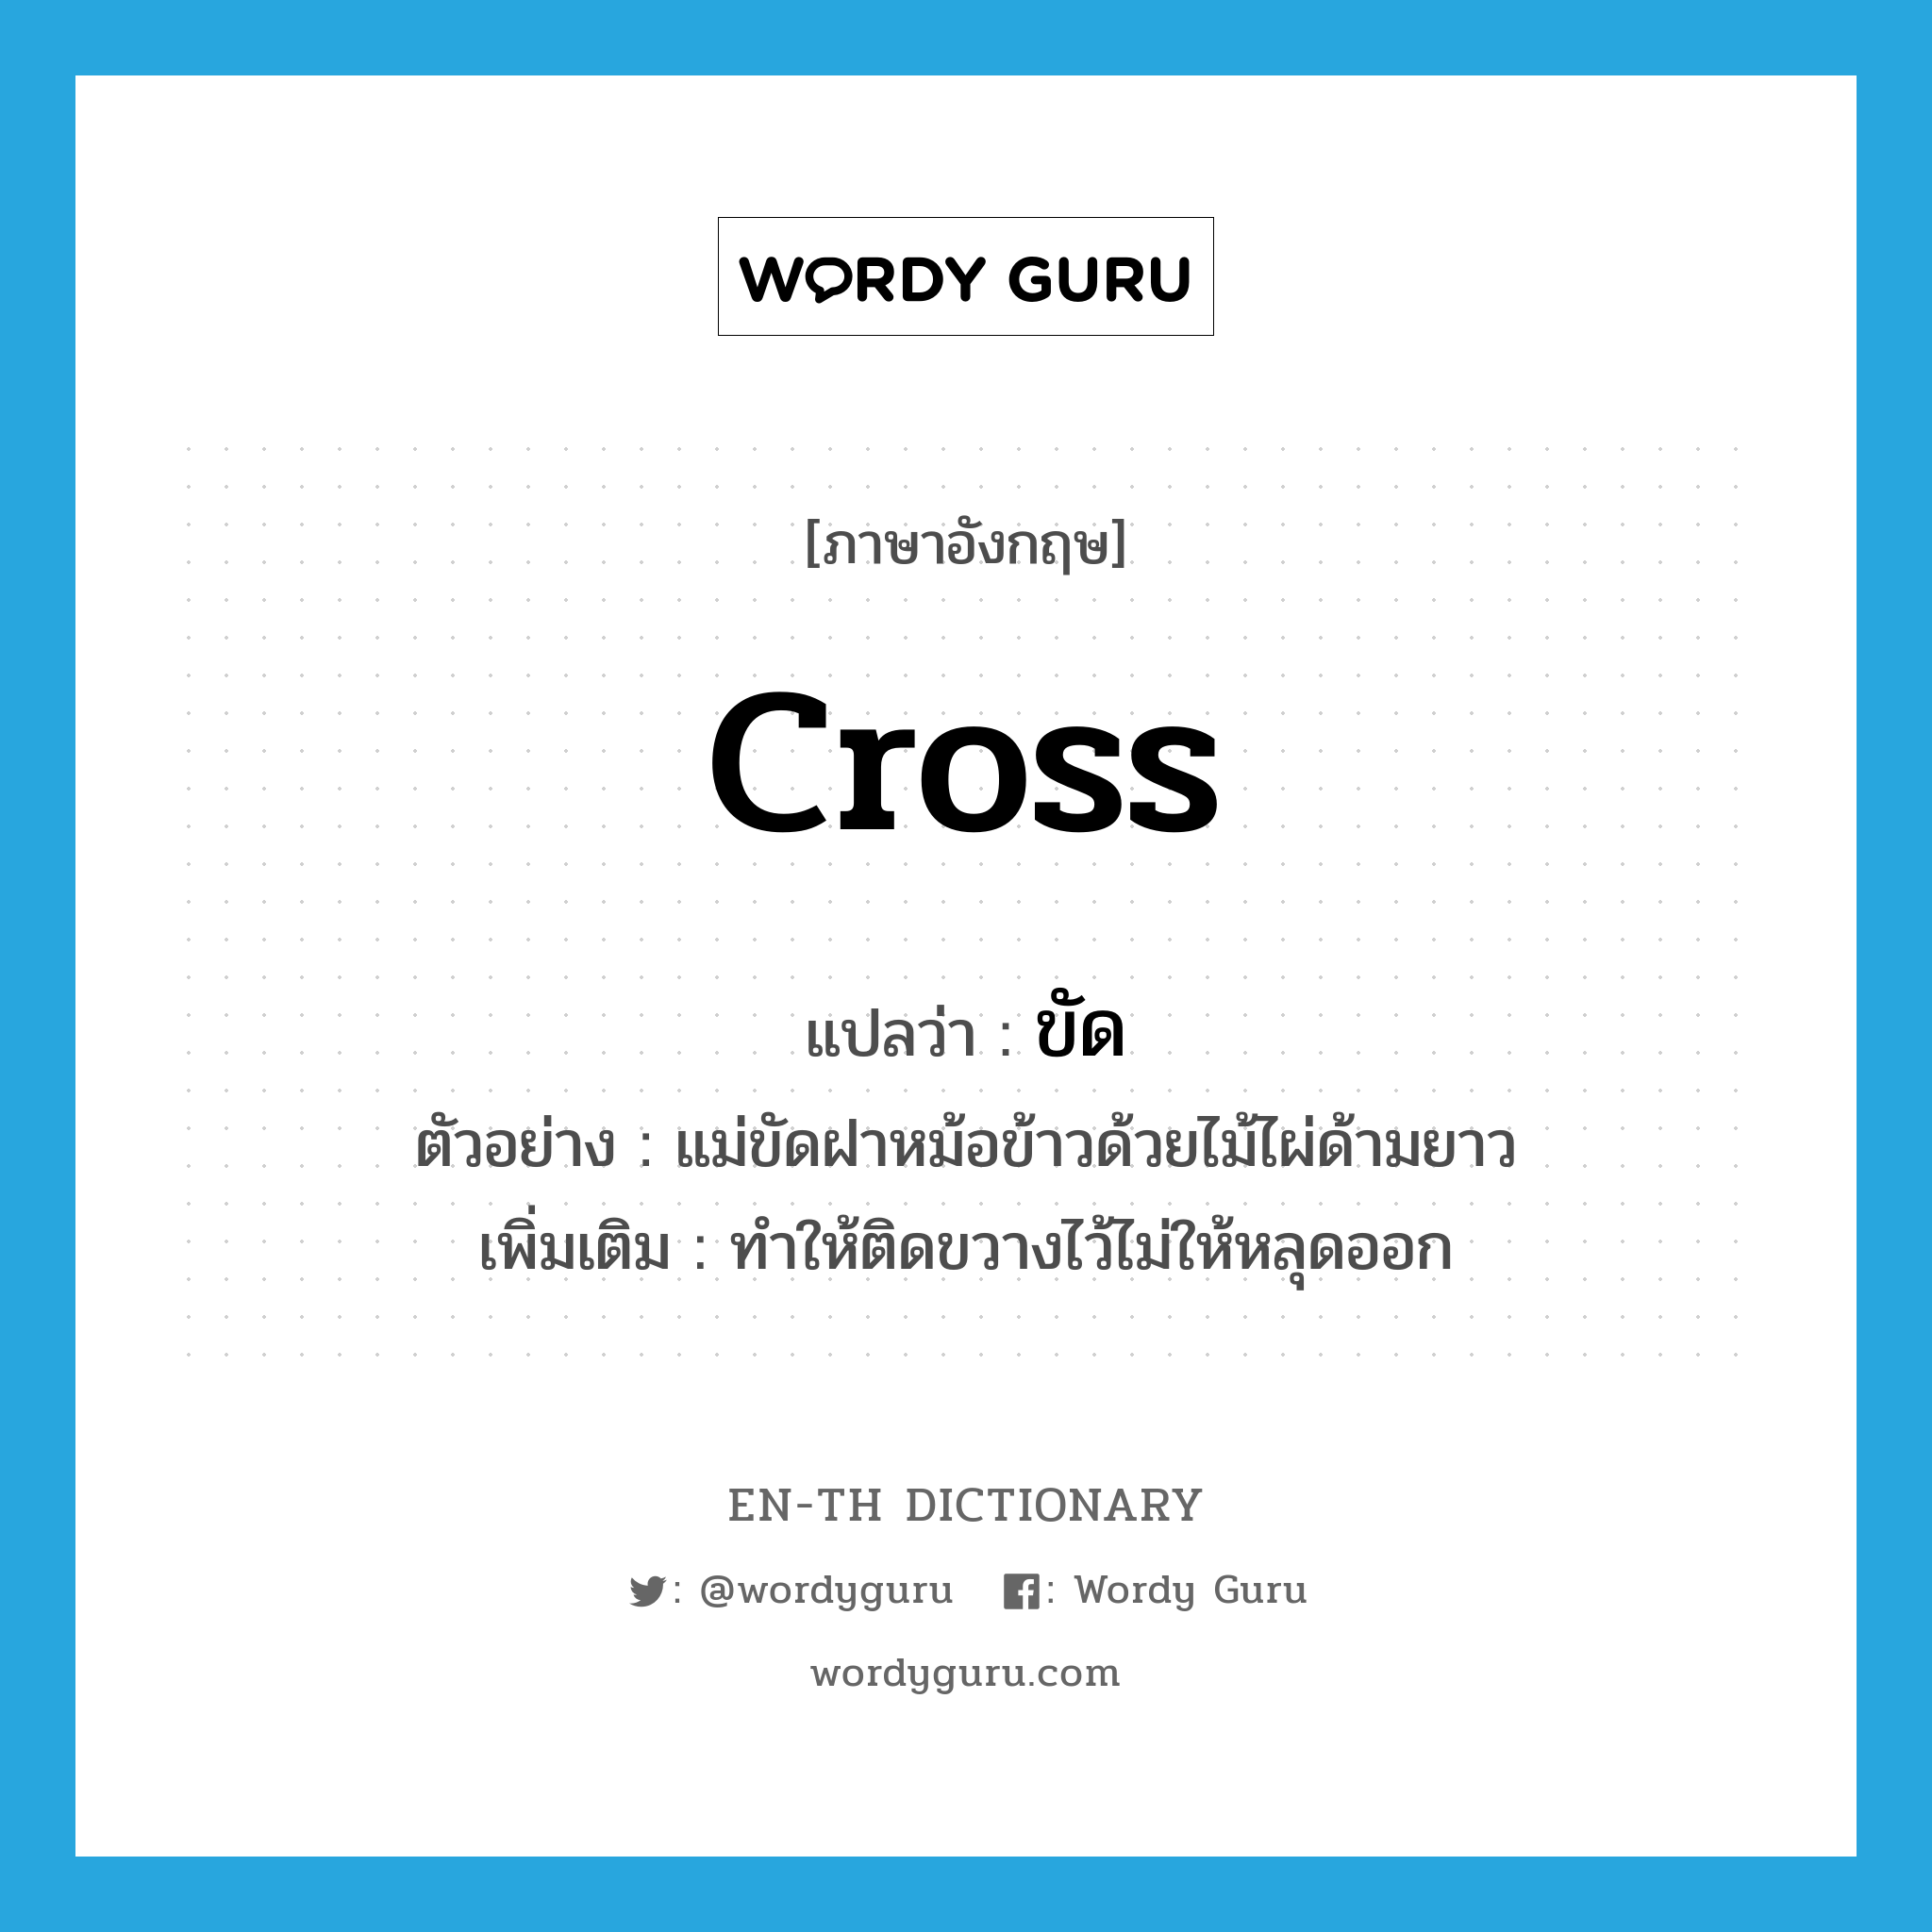 cross แปลว่า?, คำศัพท์ภาษาอังกฤษ cross แปลว่า ขัด ประเภท V ตัวอย่าง แม่ขัดฝาหม้อข้าวด้วยไม้ไผ่ด้ามยาว เพิ่มเติม ทำให้ติดขวางไว้ไม่ให้หลุดออก หมวด V